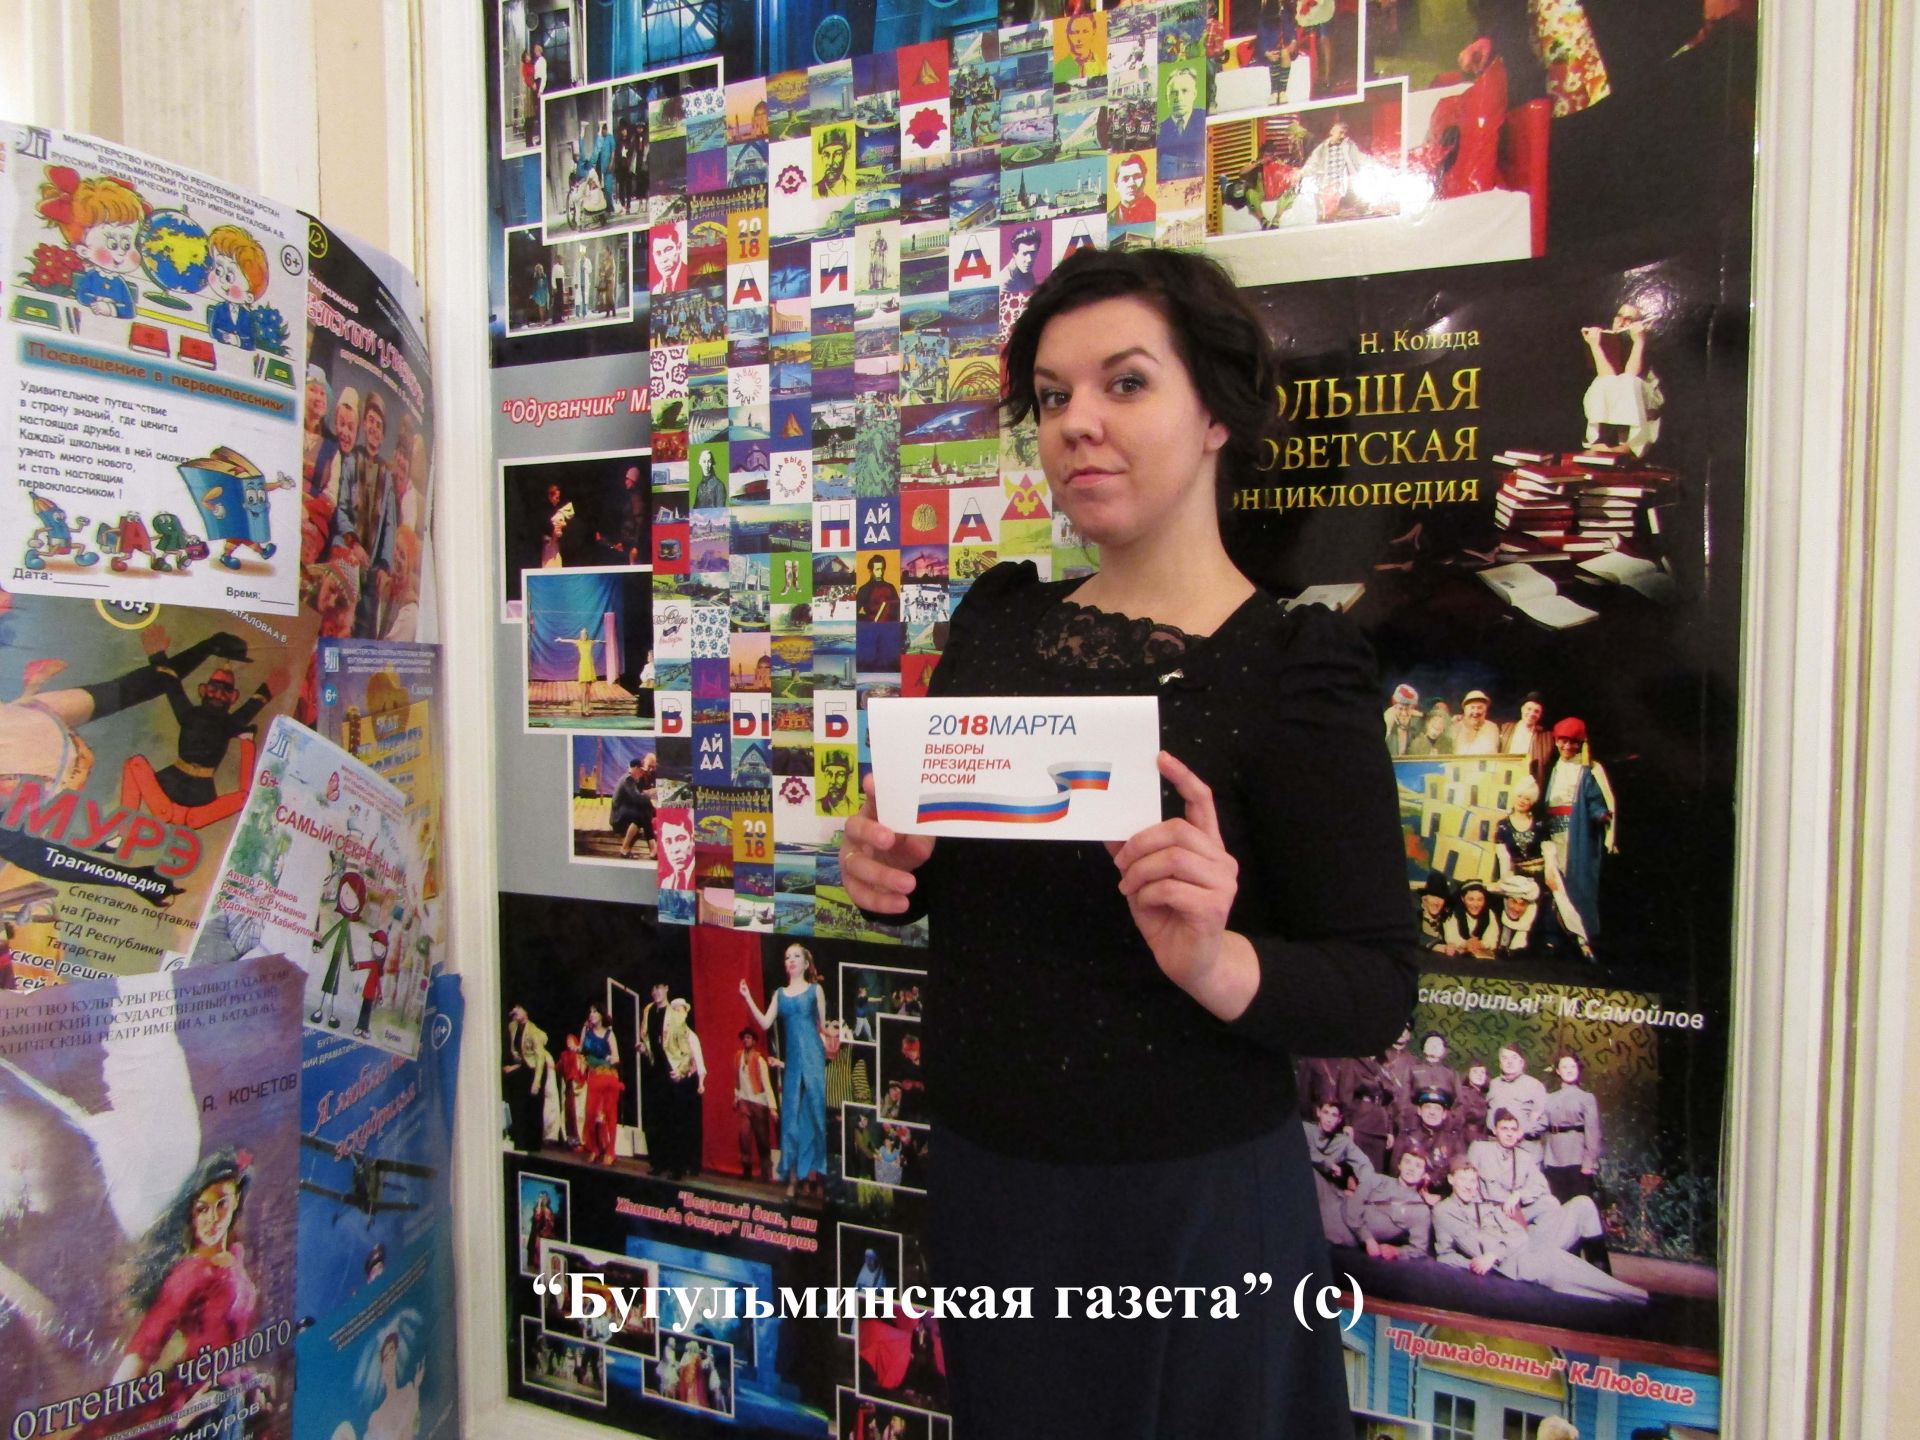 Бугульминские артисты приняли участие в акции "Айданавыборы"